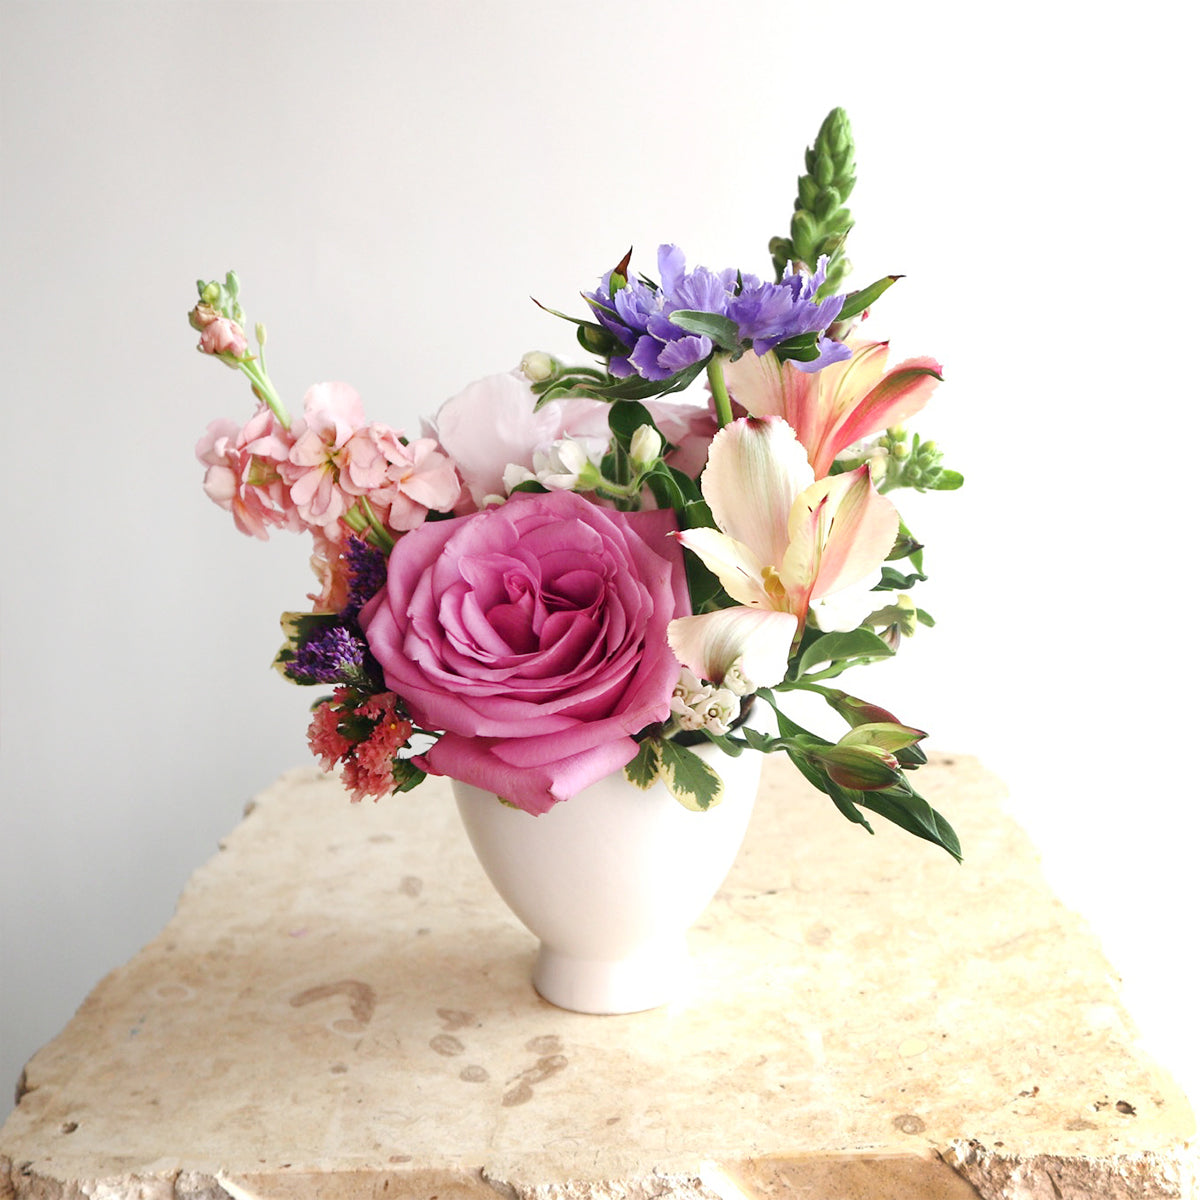 Bud Vase Set Sweet and Loving - Flower Delivery - Order Now! – Designer  Blooms Canada